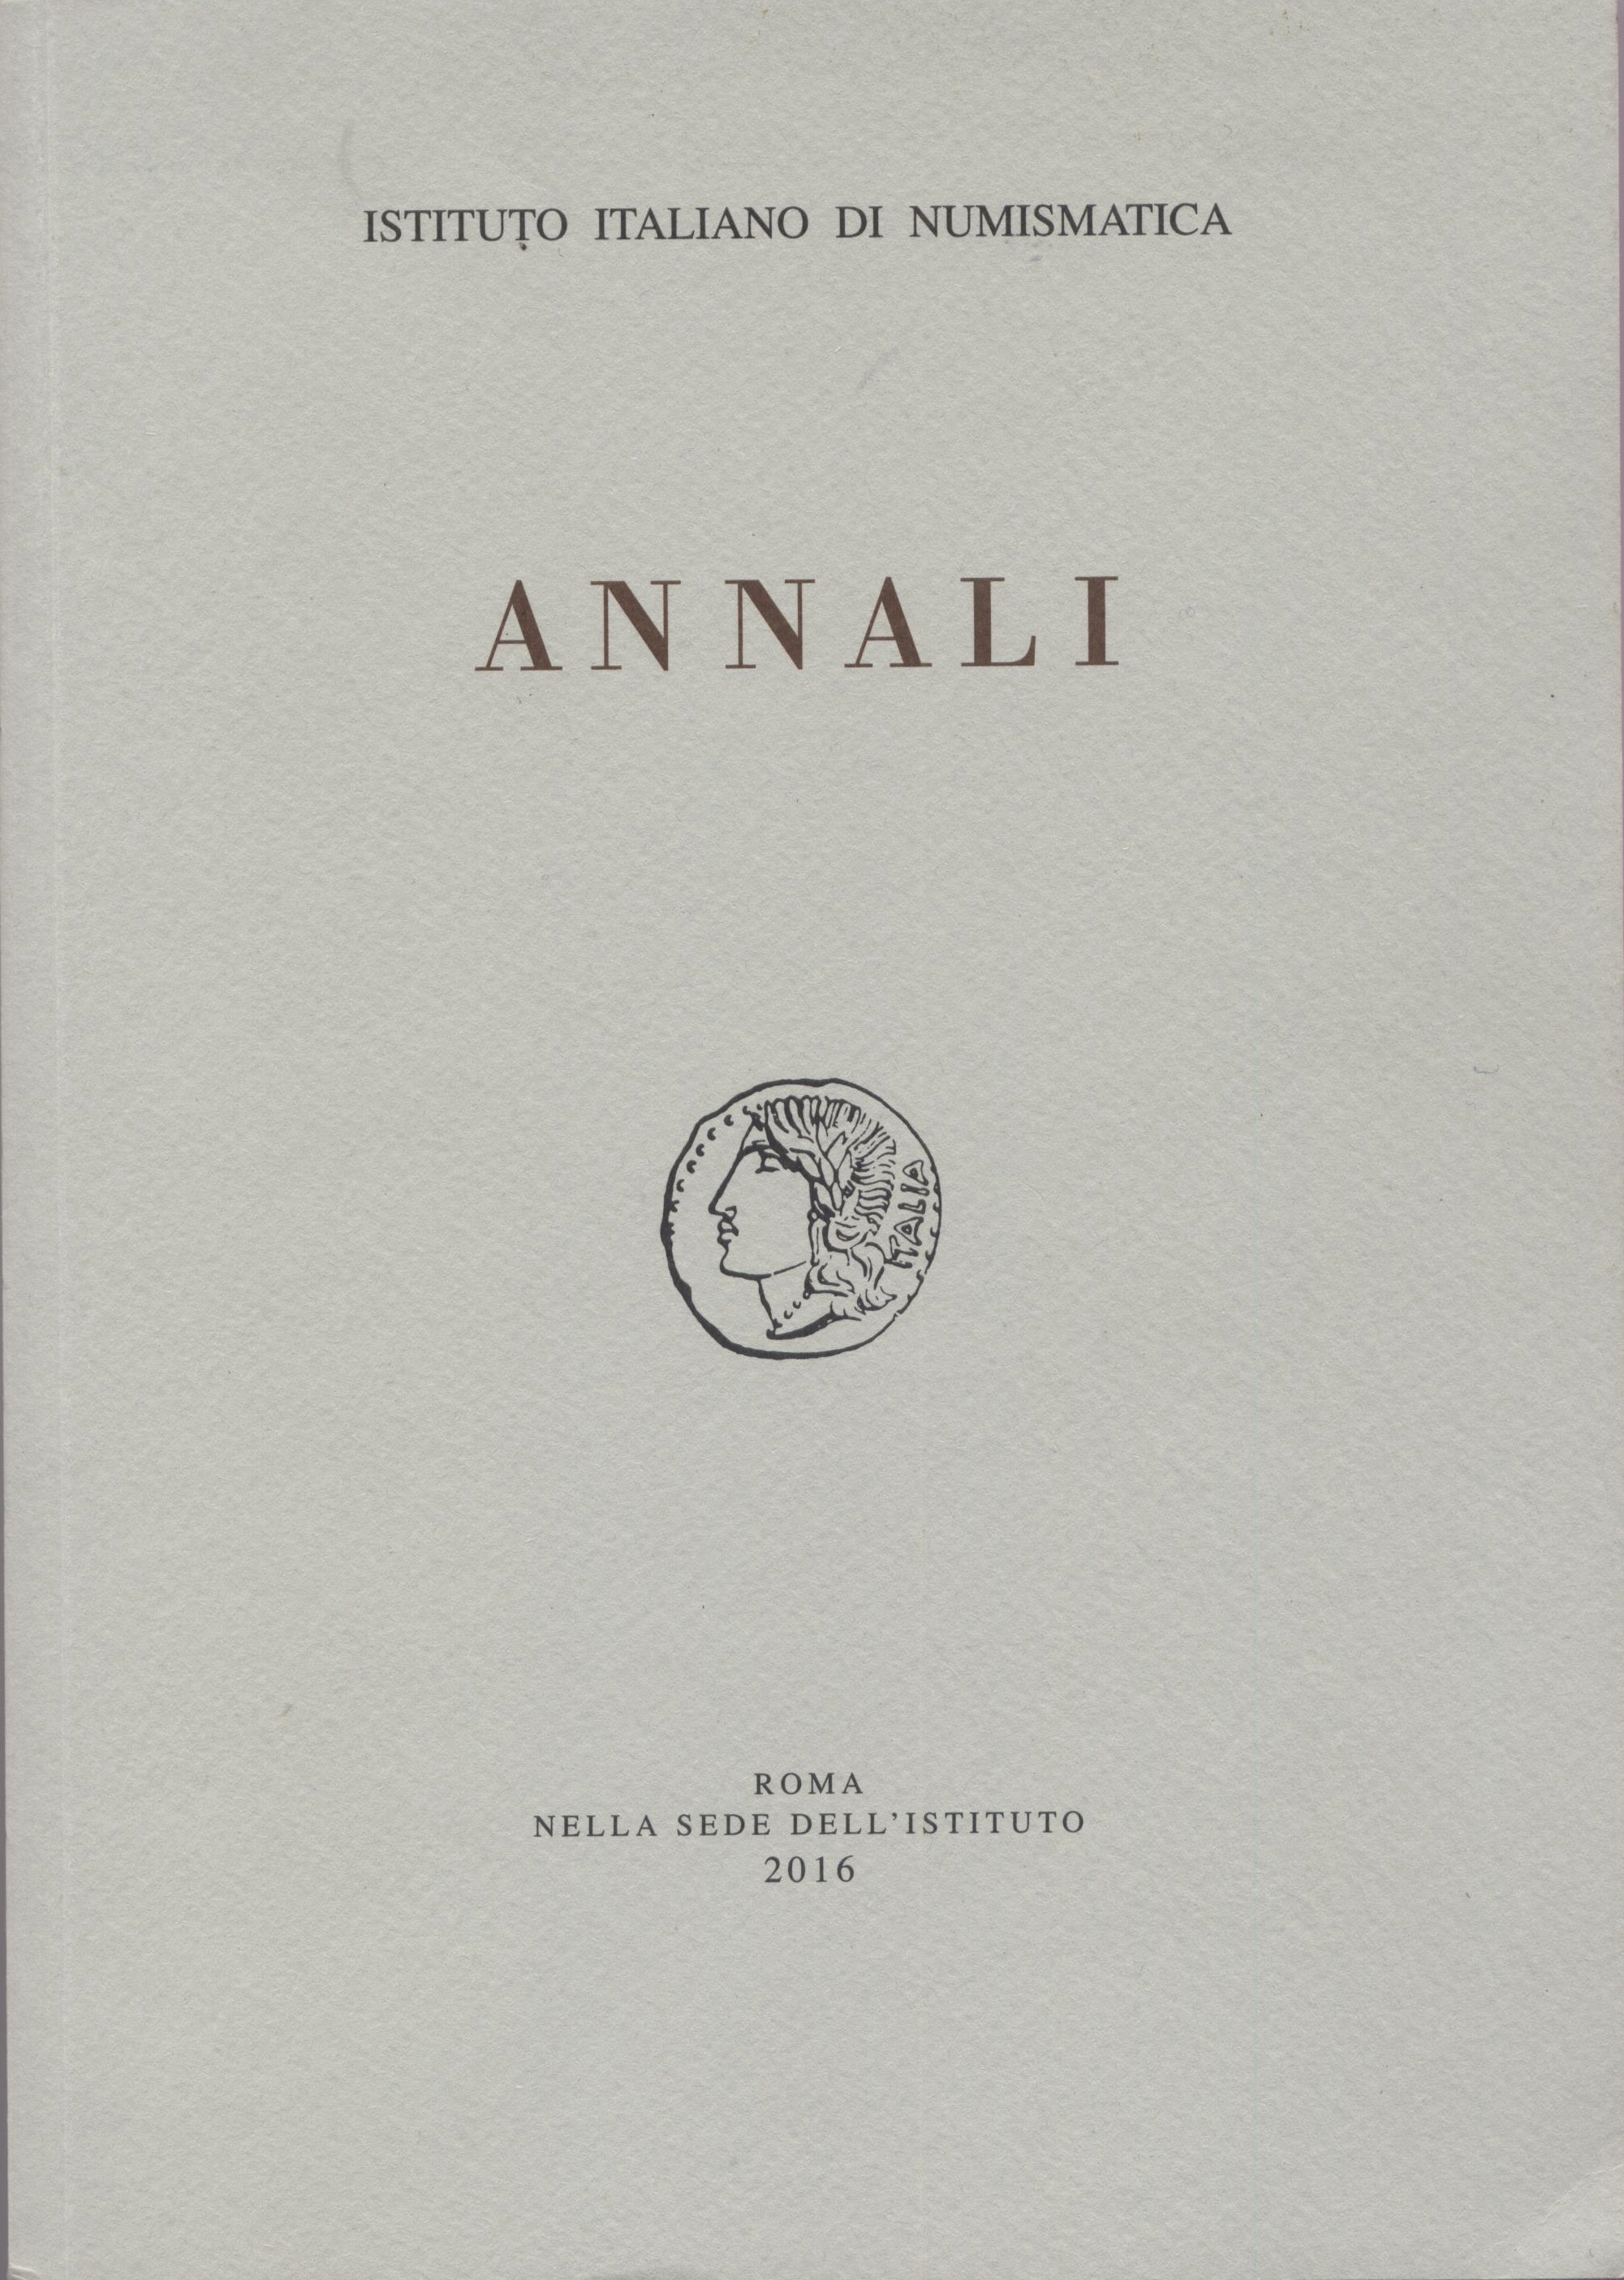 Imagen de portada de la revista Annali (Istituto Italiano di Numismatica)